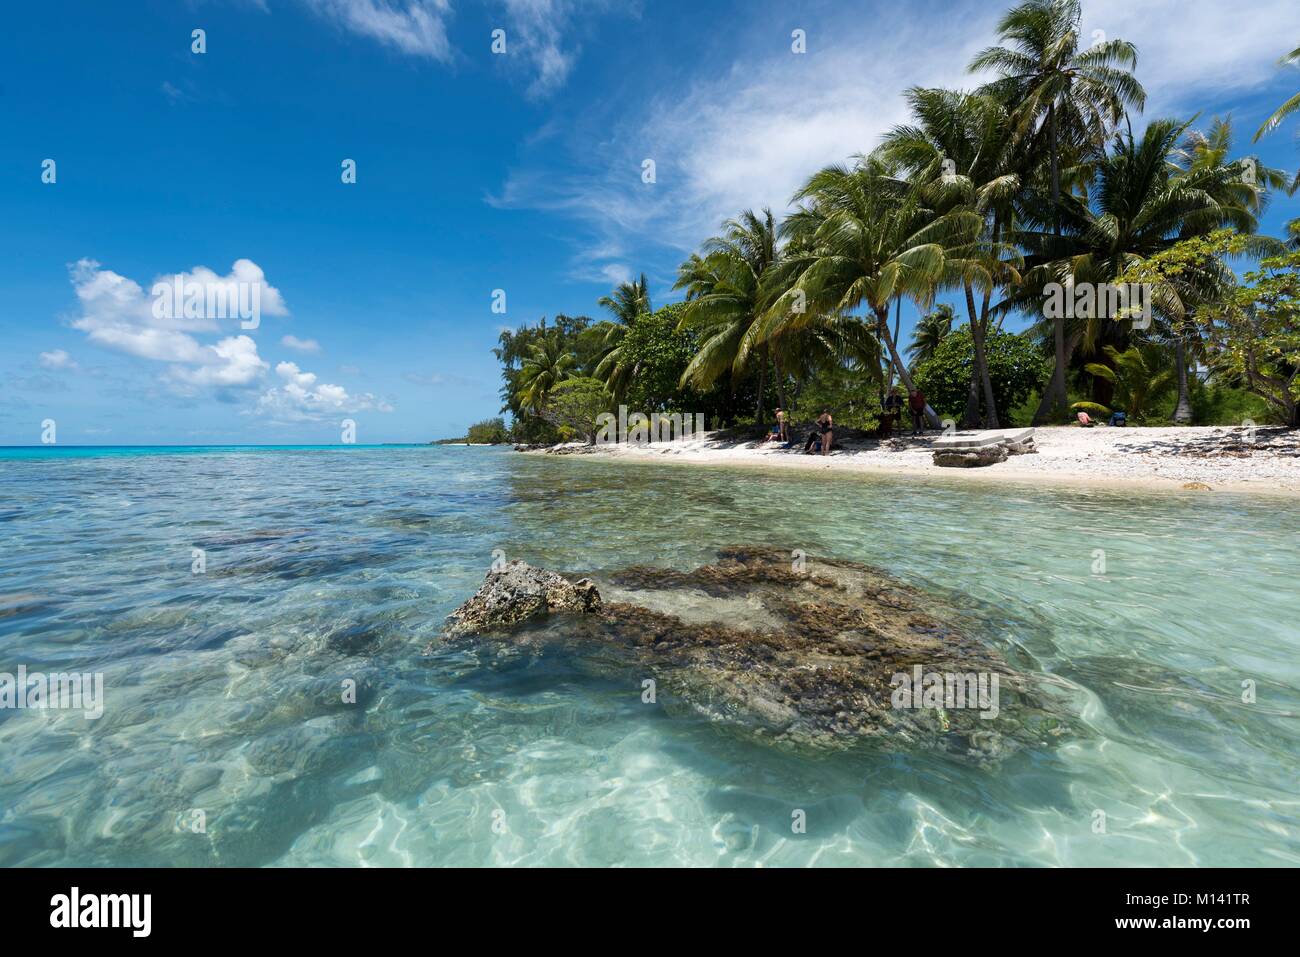 La France, la Polynésie française, archipel des Tuamotu, l'atoll de Rangiroa, des croisières à bord du cargo mixte Aranui 5 pomme de terre, corail et palmiers Banque D'Images